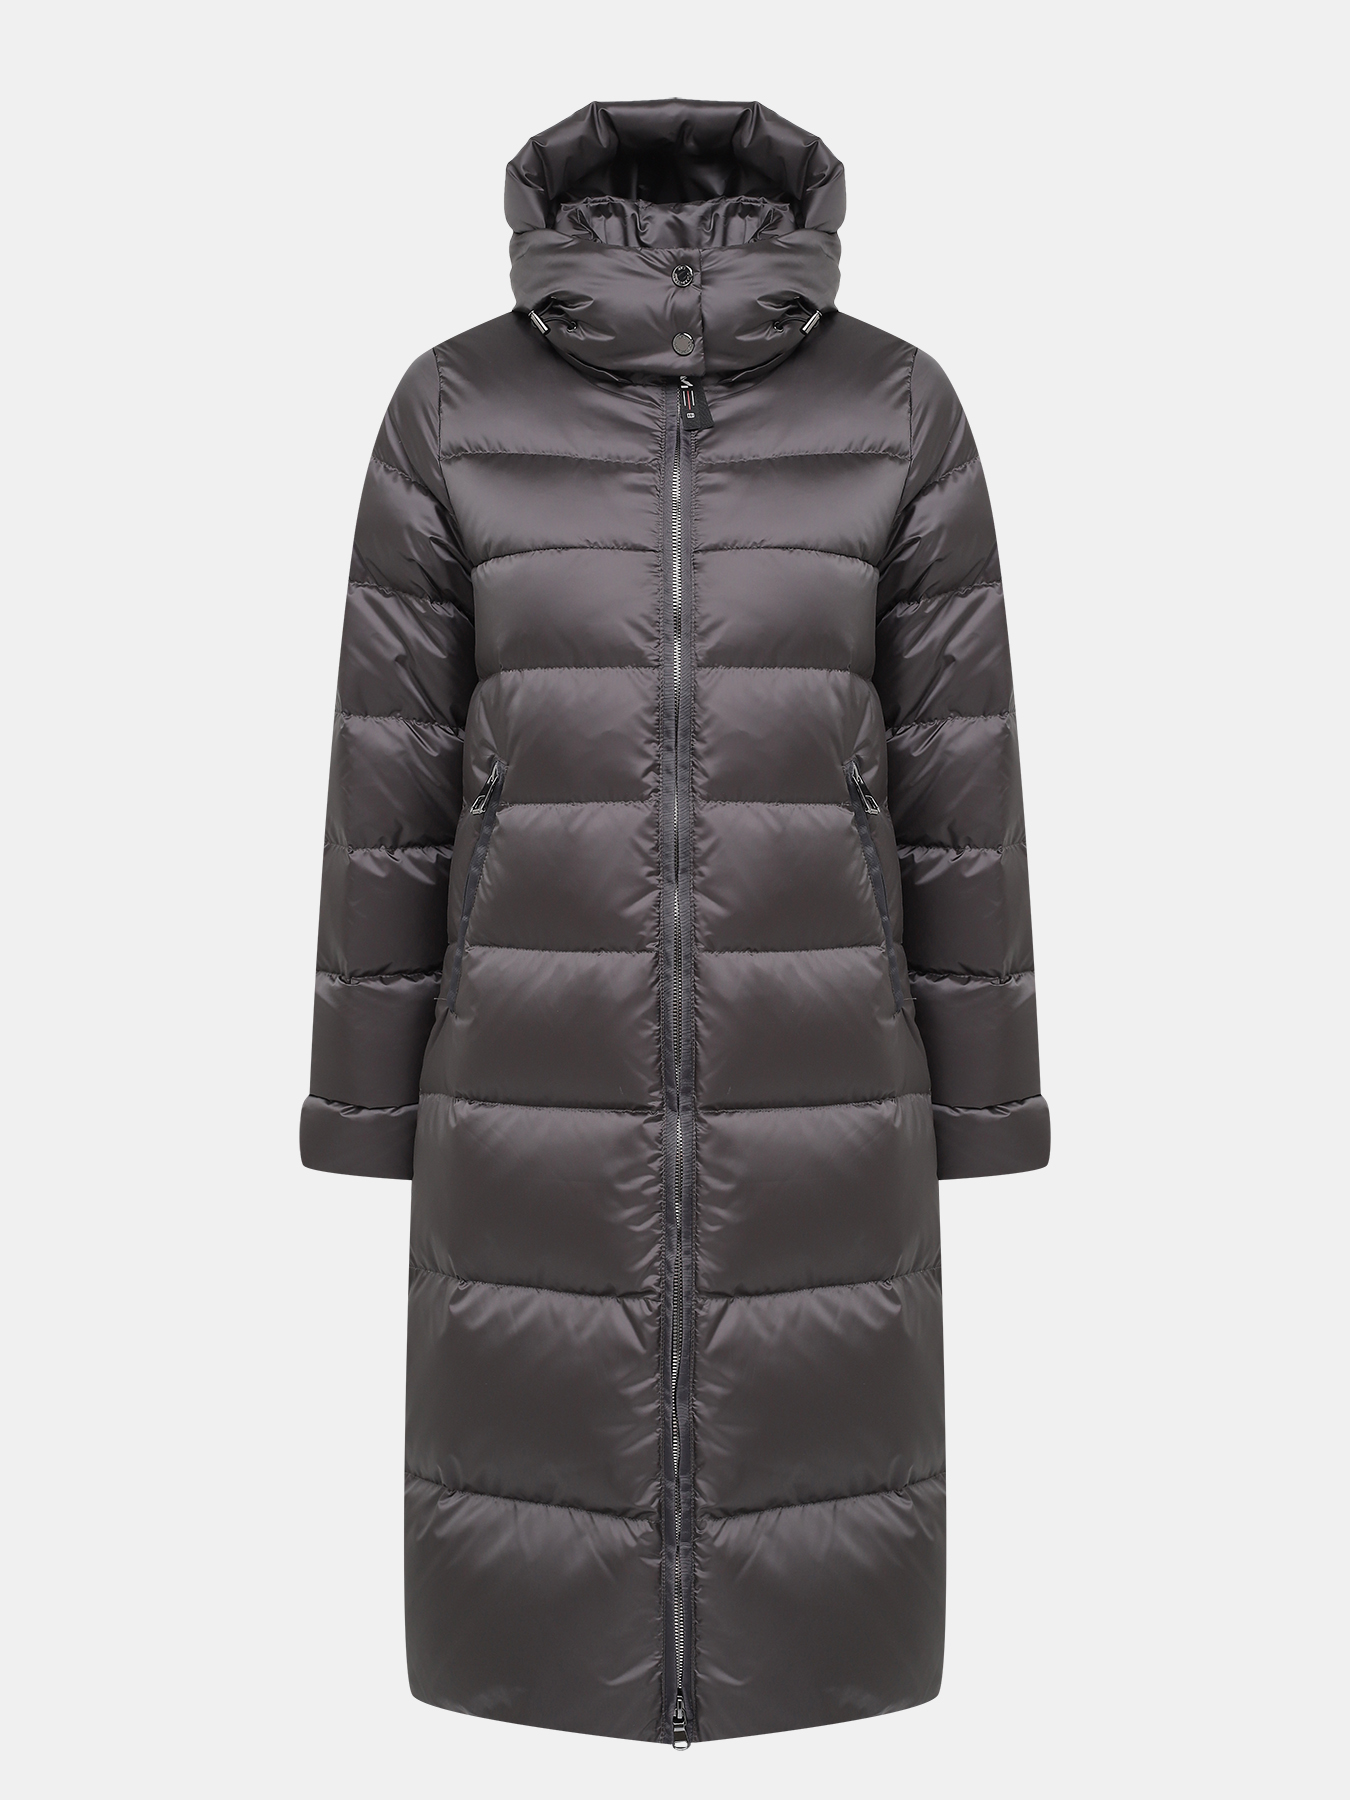 Пальто зимнее AVI 433634-025, цвет серый, размер 48